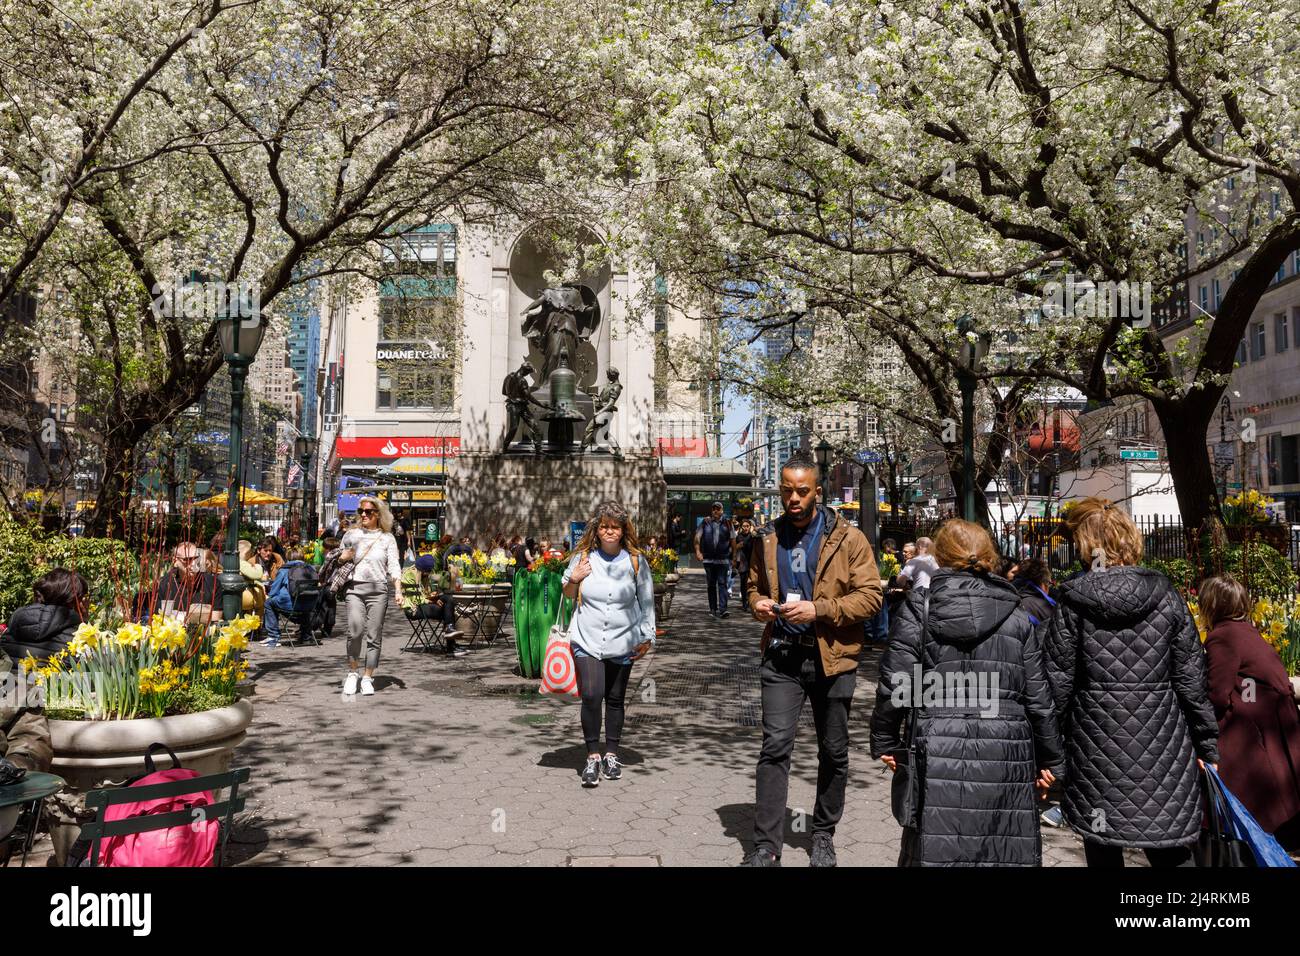 Herald Square en primavera está lleno de árboles en flor, en el centro de la ciudad, Nueva York, NY, Estados Unidos. Foto de stock